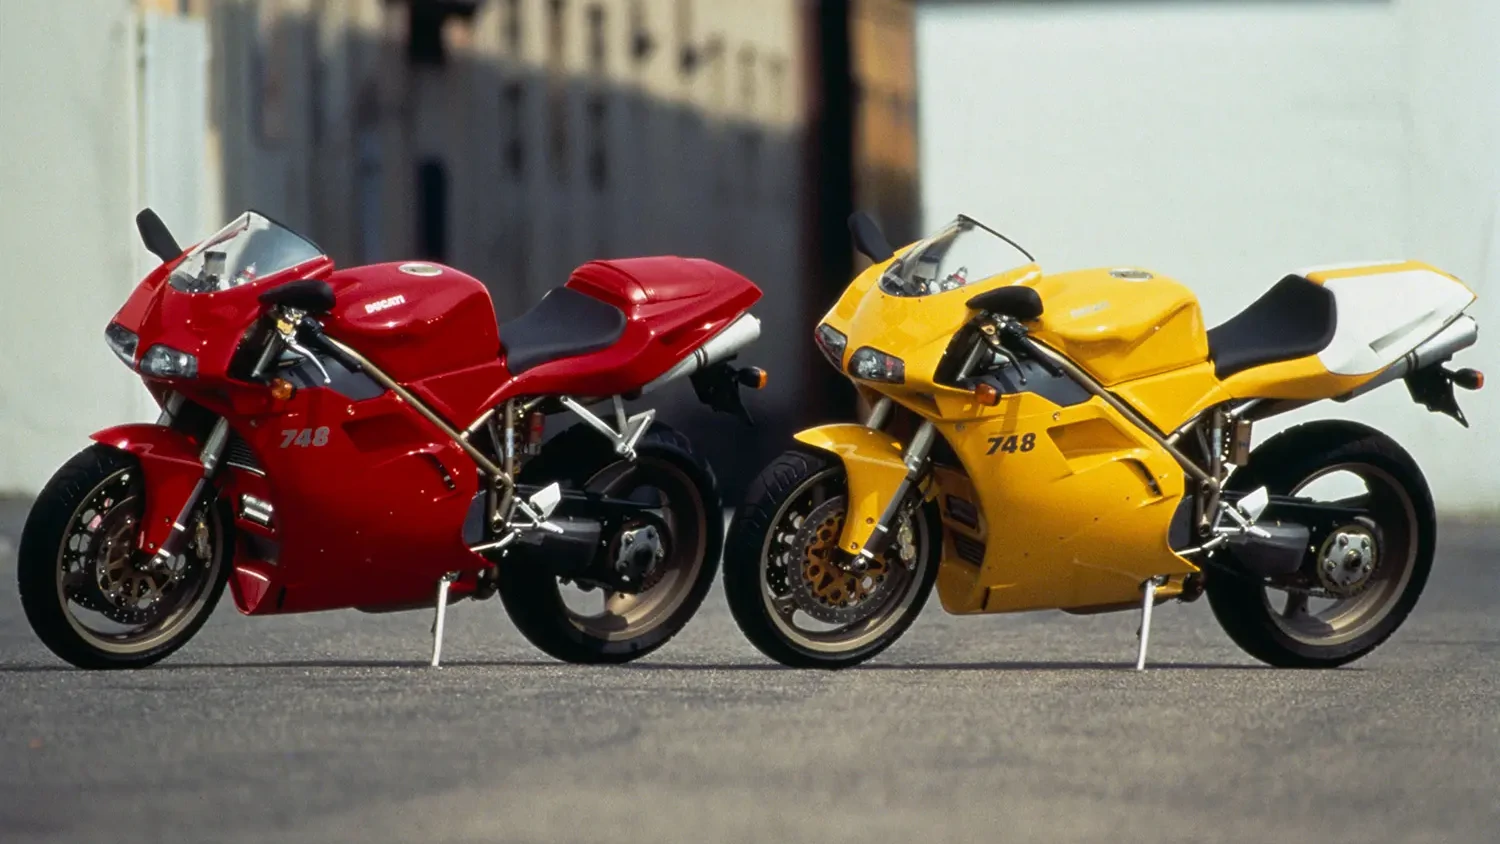 Moto del día: Ducati 748